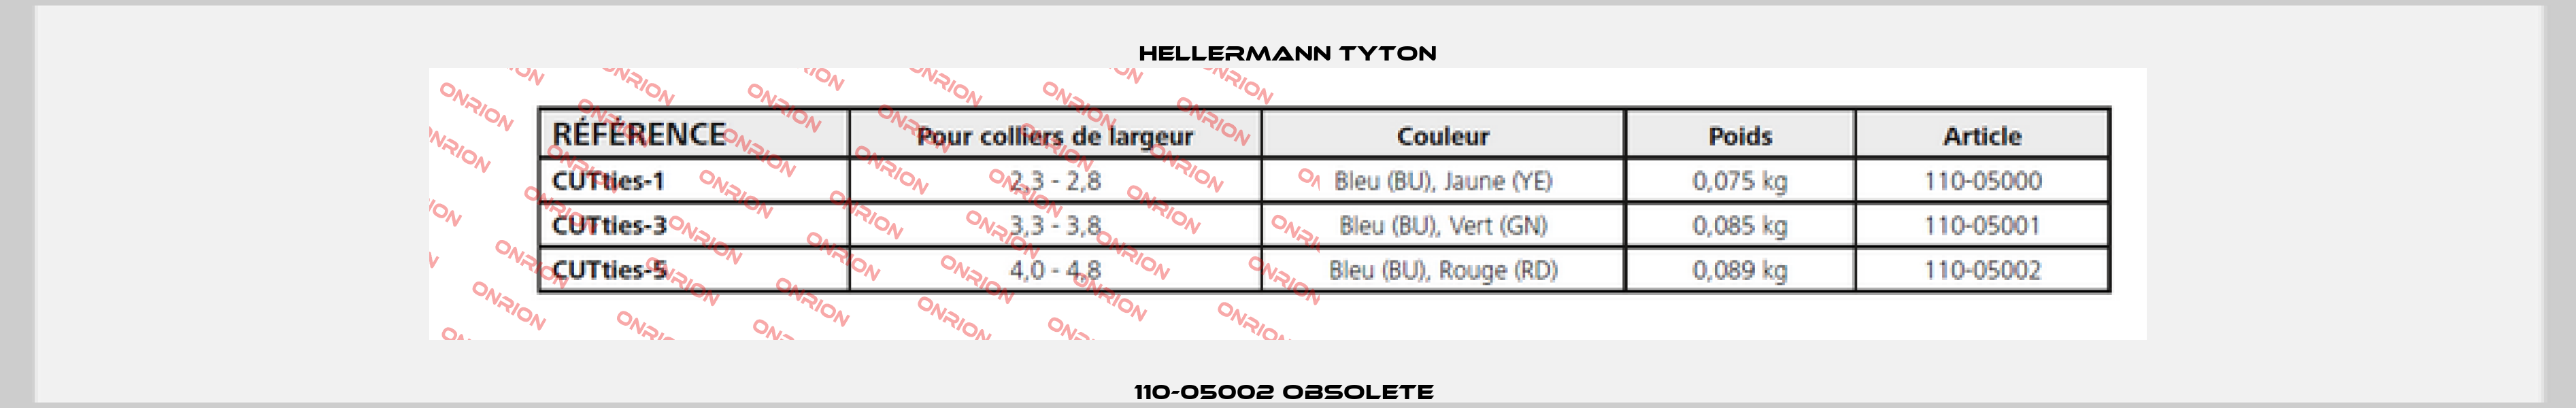 110-05002 obsolete  Hellermann Tyton